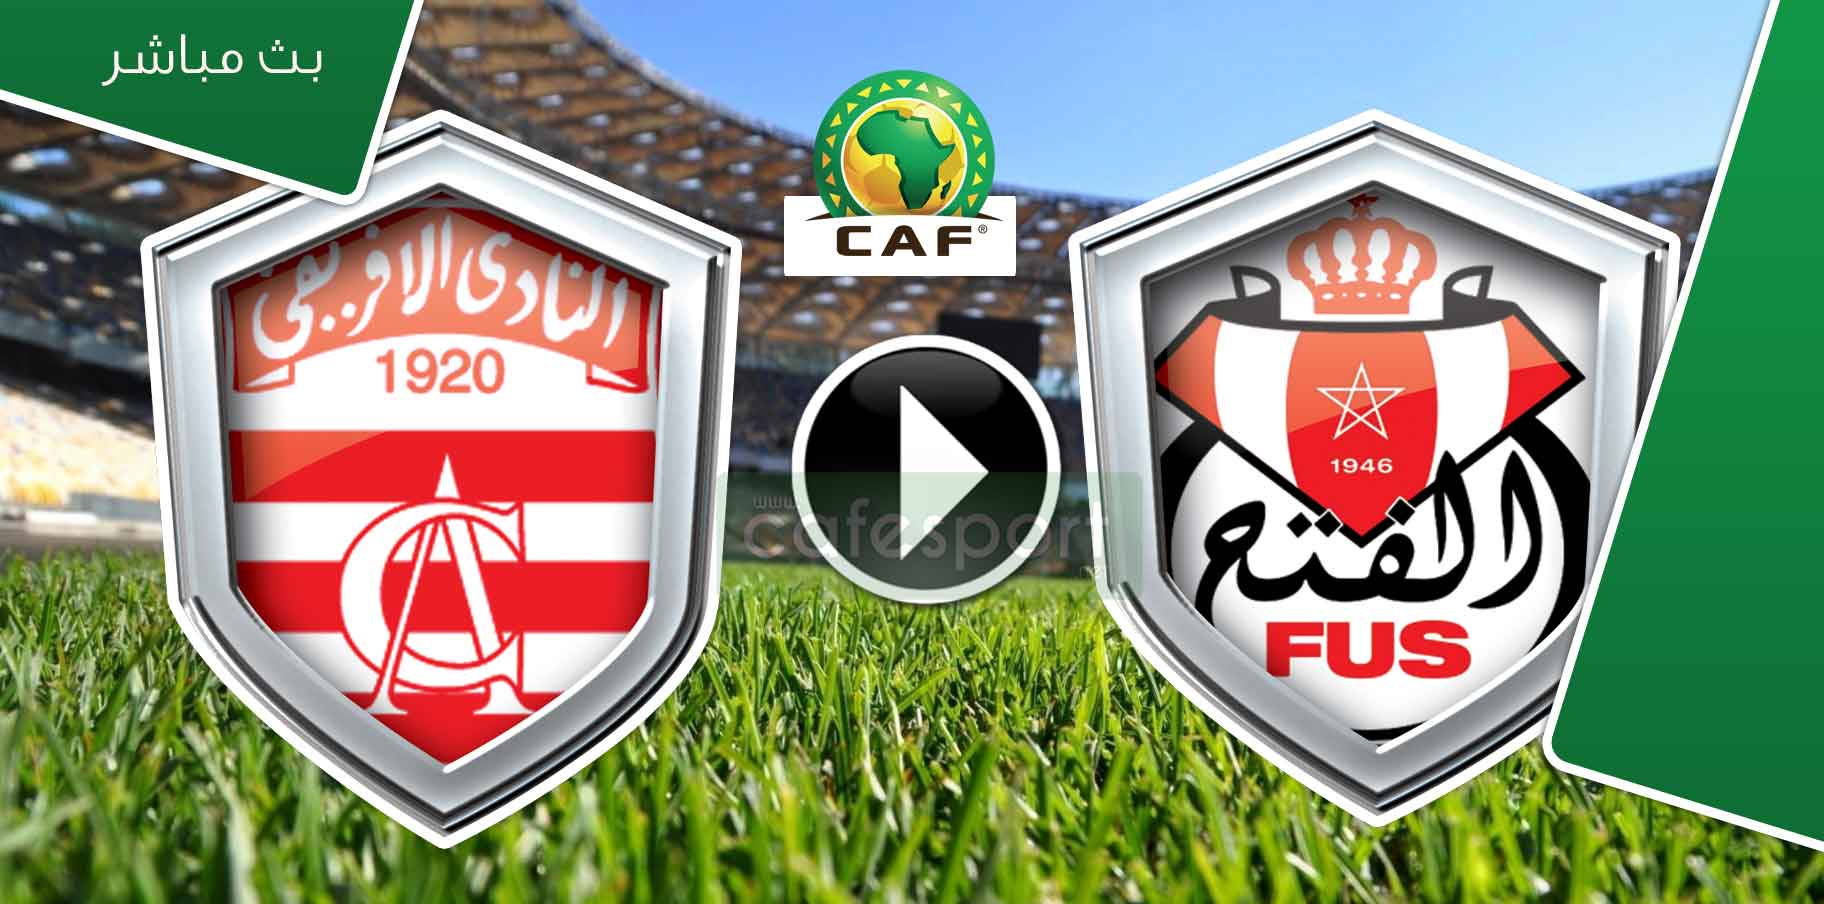 بث مباشر لمباراة الفتح الرباطي المغربي -النادي الافريقي